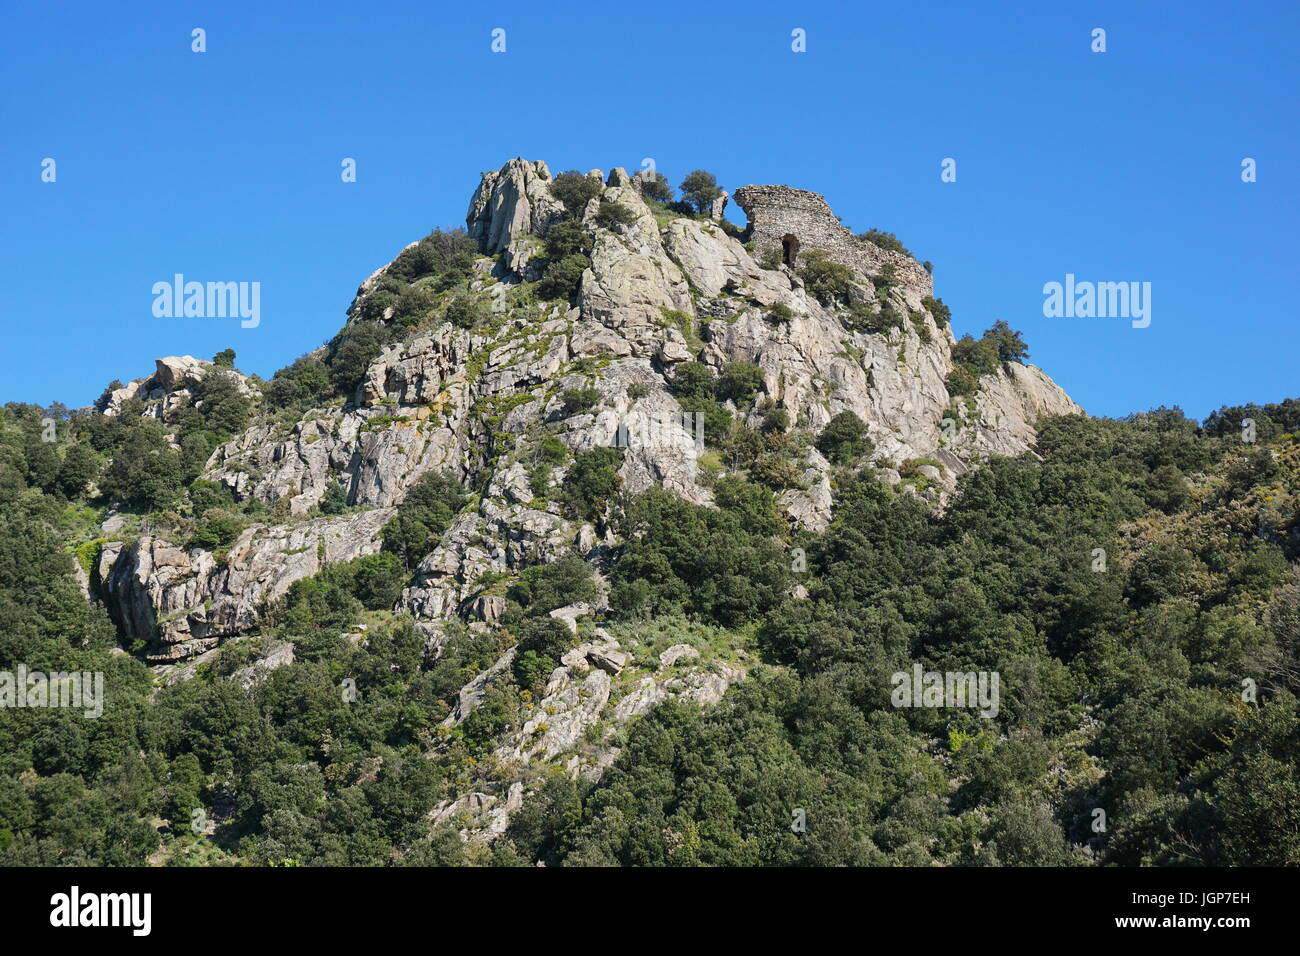 Les ruines du château d'Ultrera situé au sommet d'un éperon rocheux escarpés du massif des Albères, Pyrénées Orientales, Roussillon, France Banque D'Images